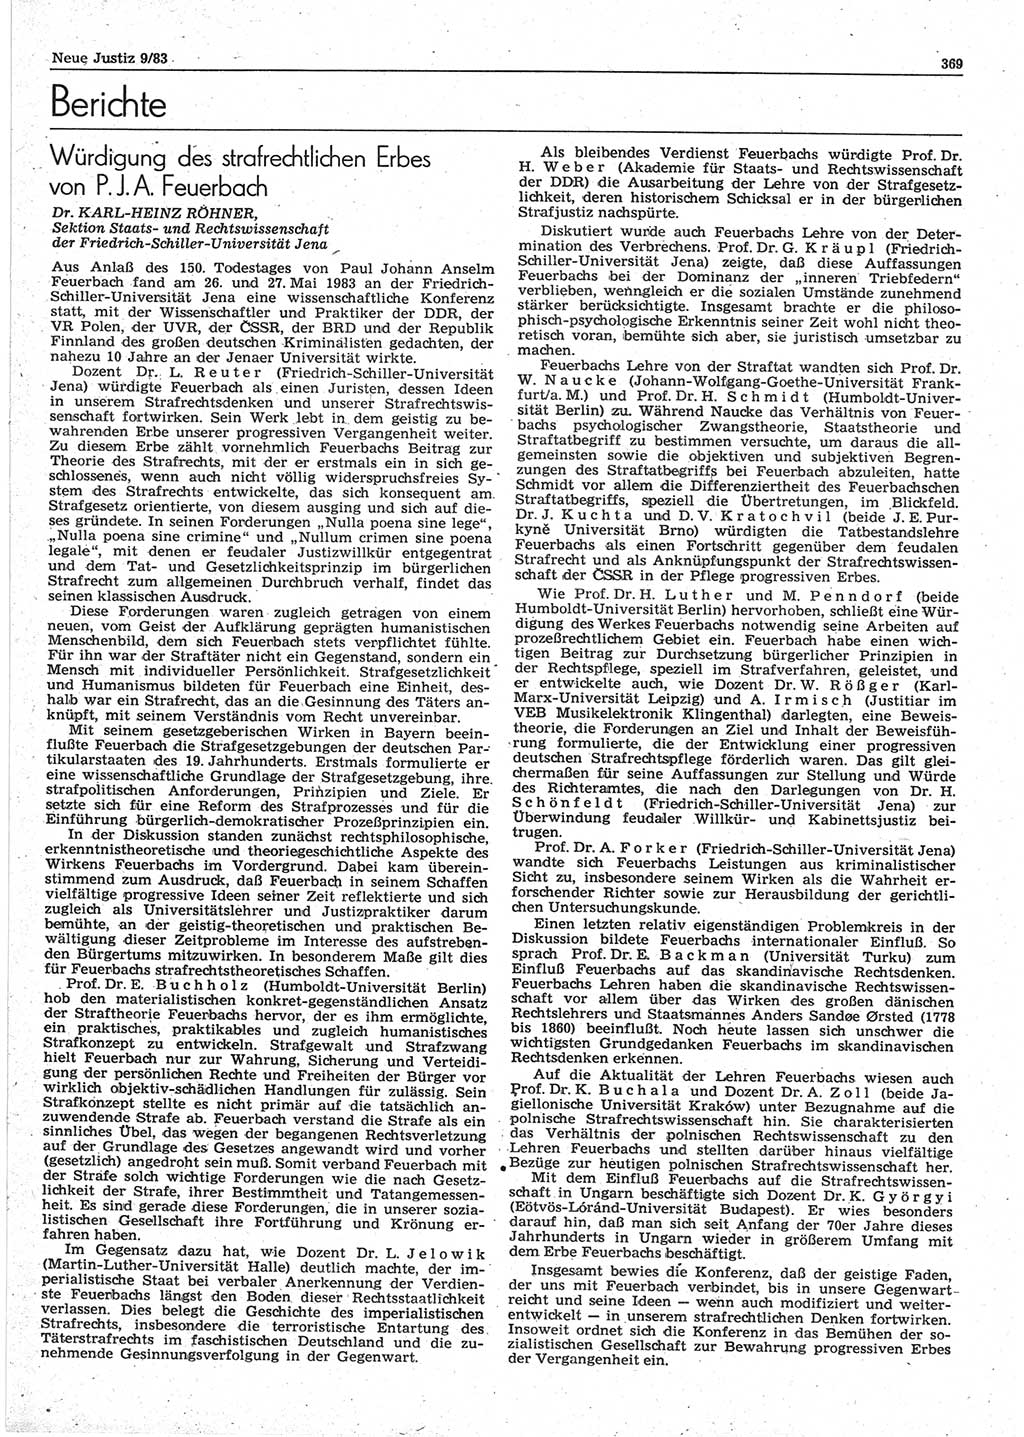 Neue Justiz (NJ), Zeitschrift für sozialistisches Recht und Gesetzlichkeit [Deutsche Demokratische Republik (DDR)], 37. Jahrgang 1983, Seite 369 (NJ DDR 1983, S. 369)